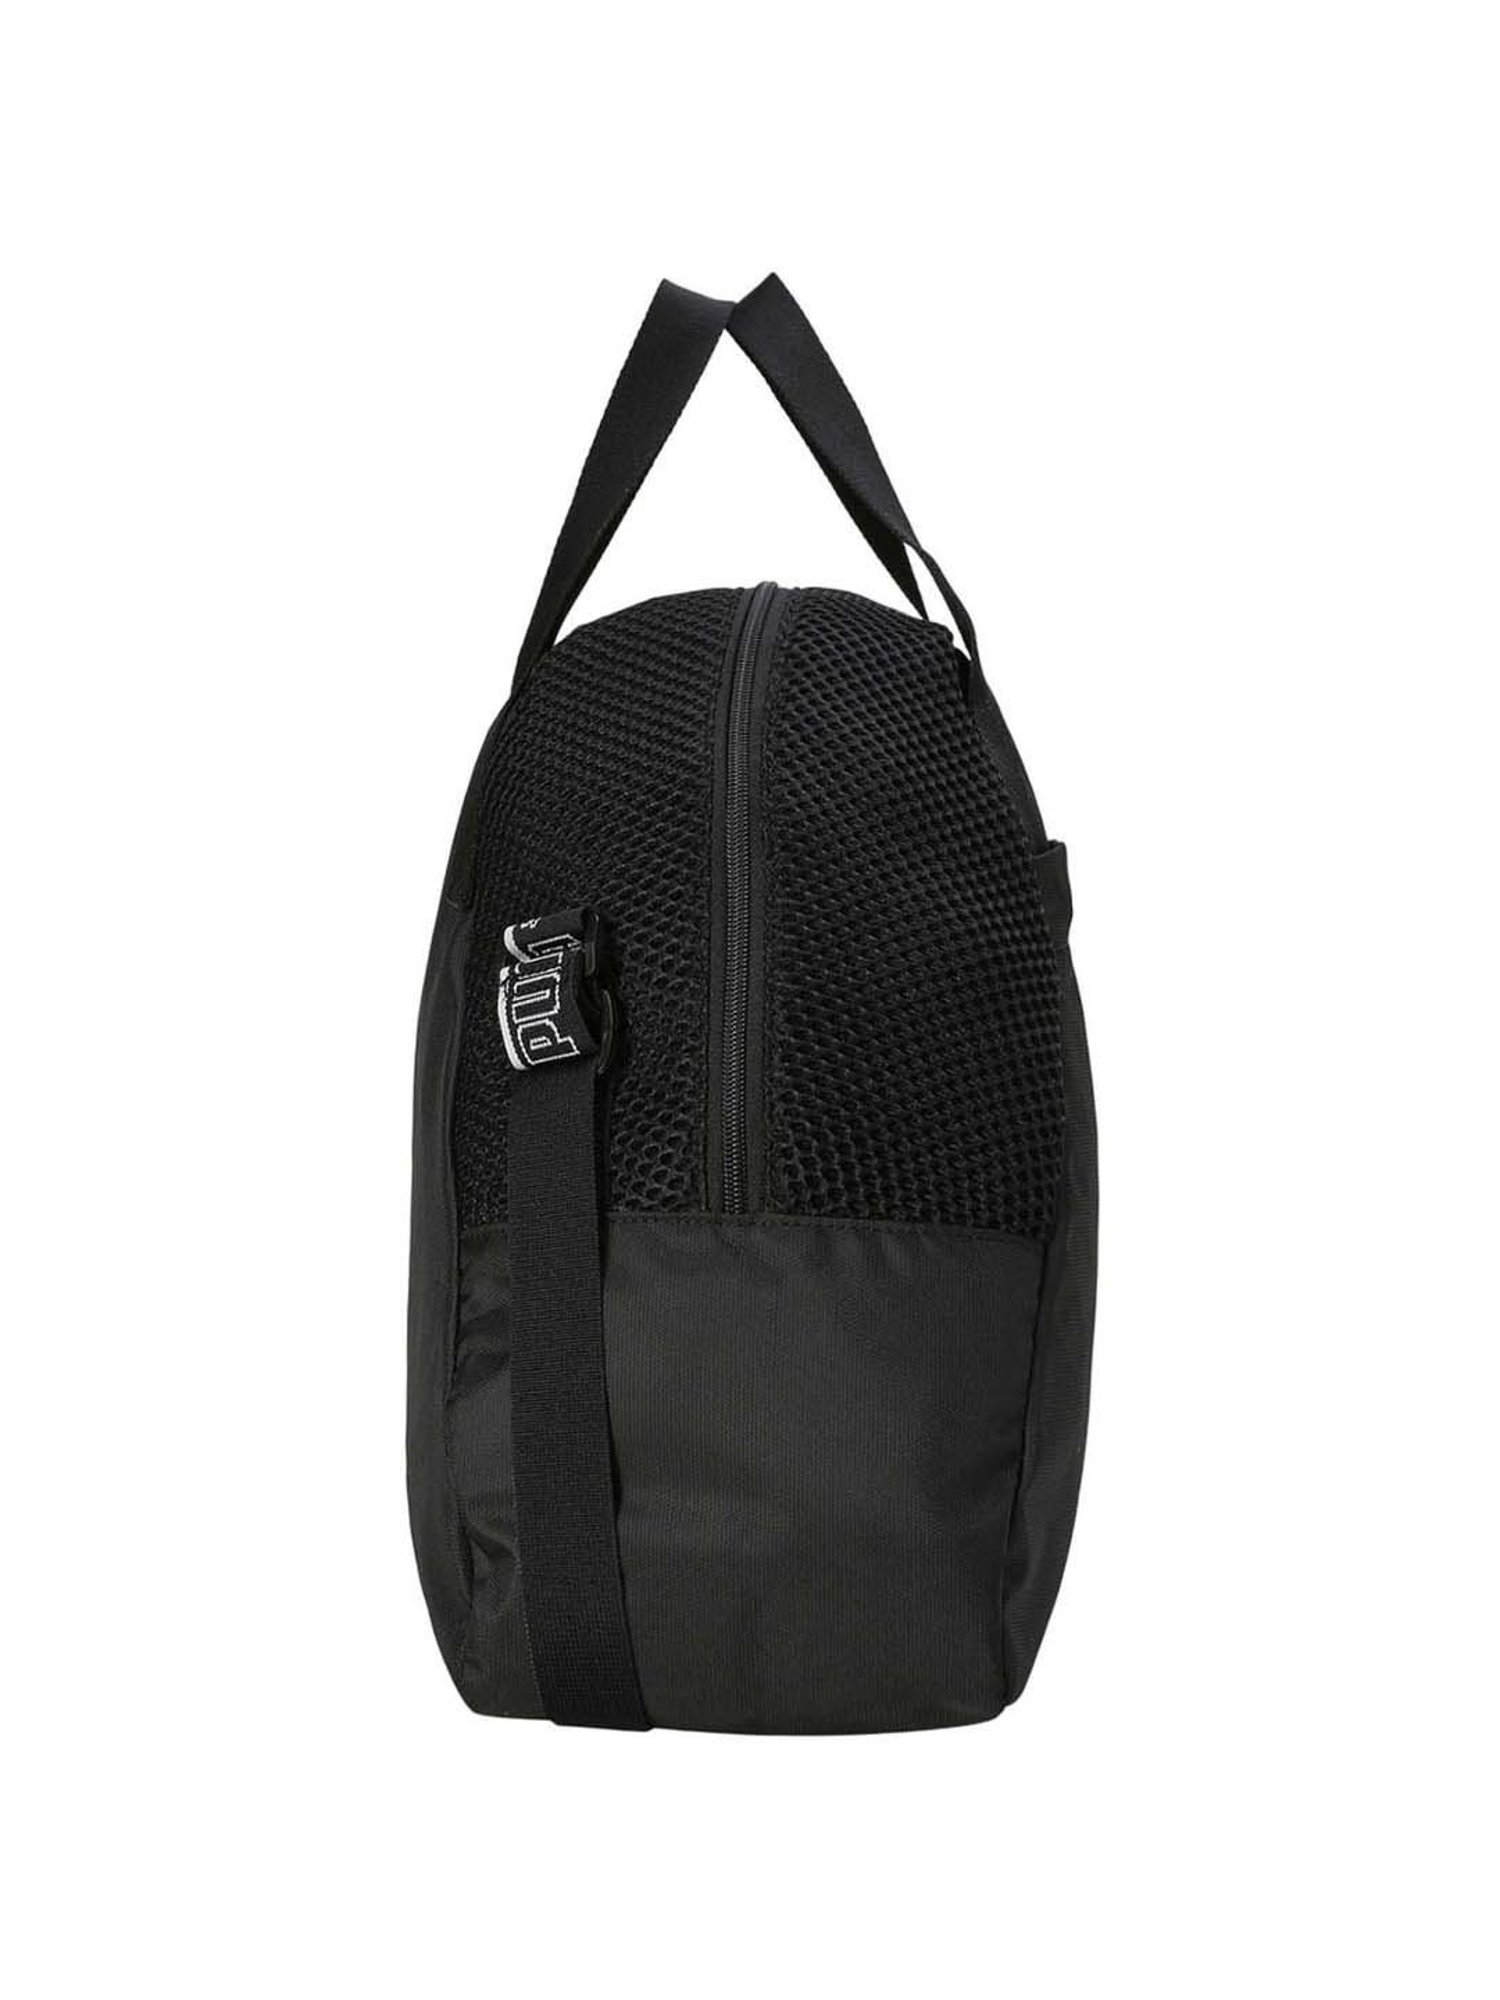 Jual Freeknight Tas Travel Bag Fashion Duffel Bag Tas Gym Bag Travel  Organizer Tote Shoulder Bag Tas Cabin Lipat TTB109 | Shopee Indonesia